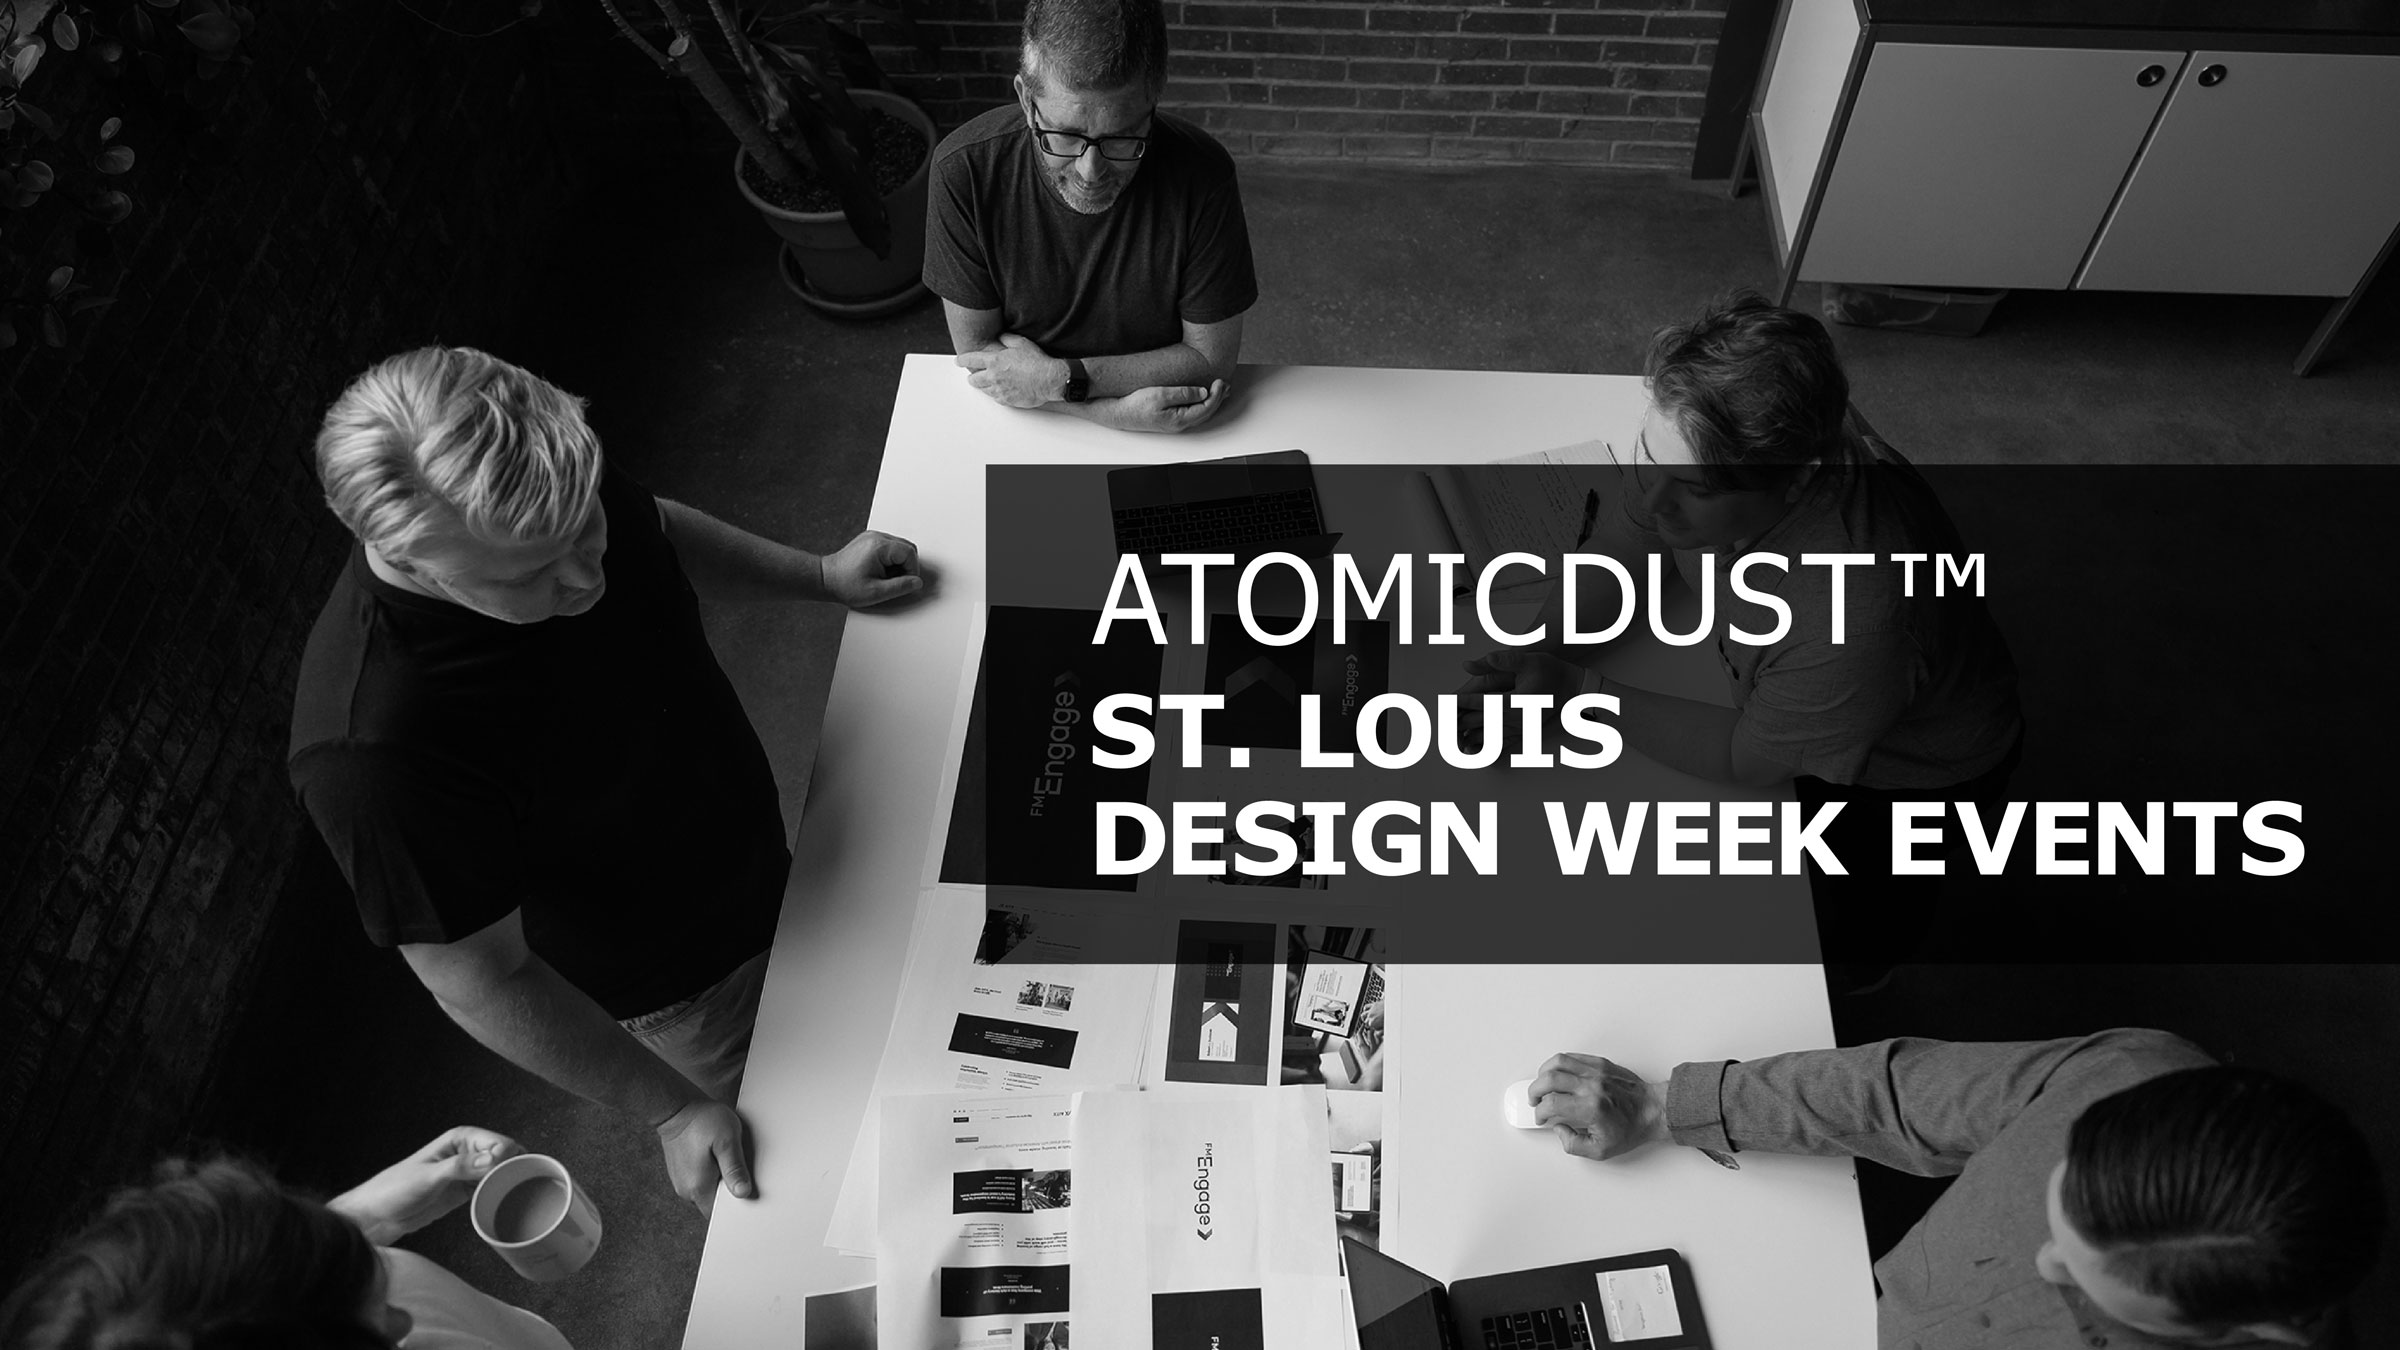 Atomicdust St. Louis Design Week Events